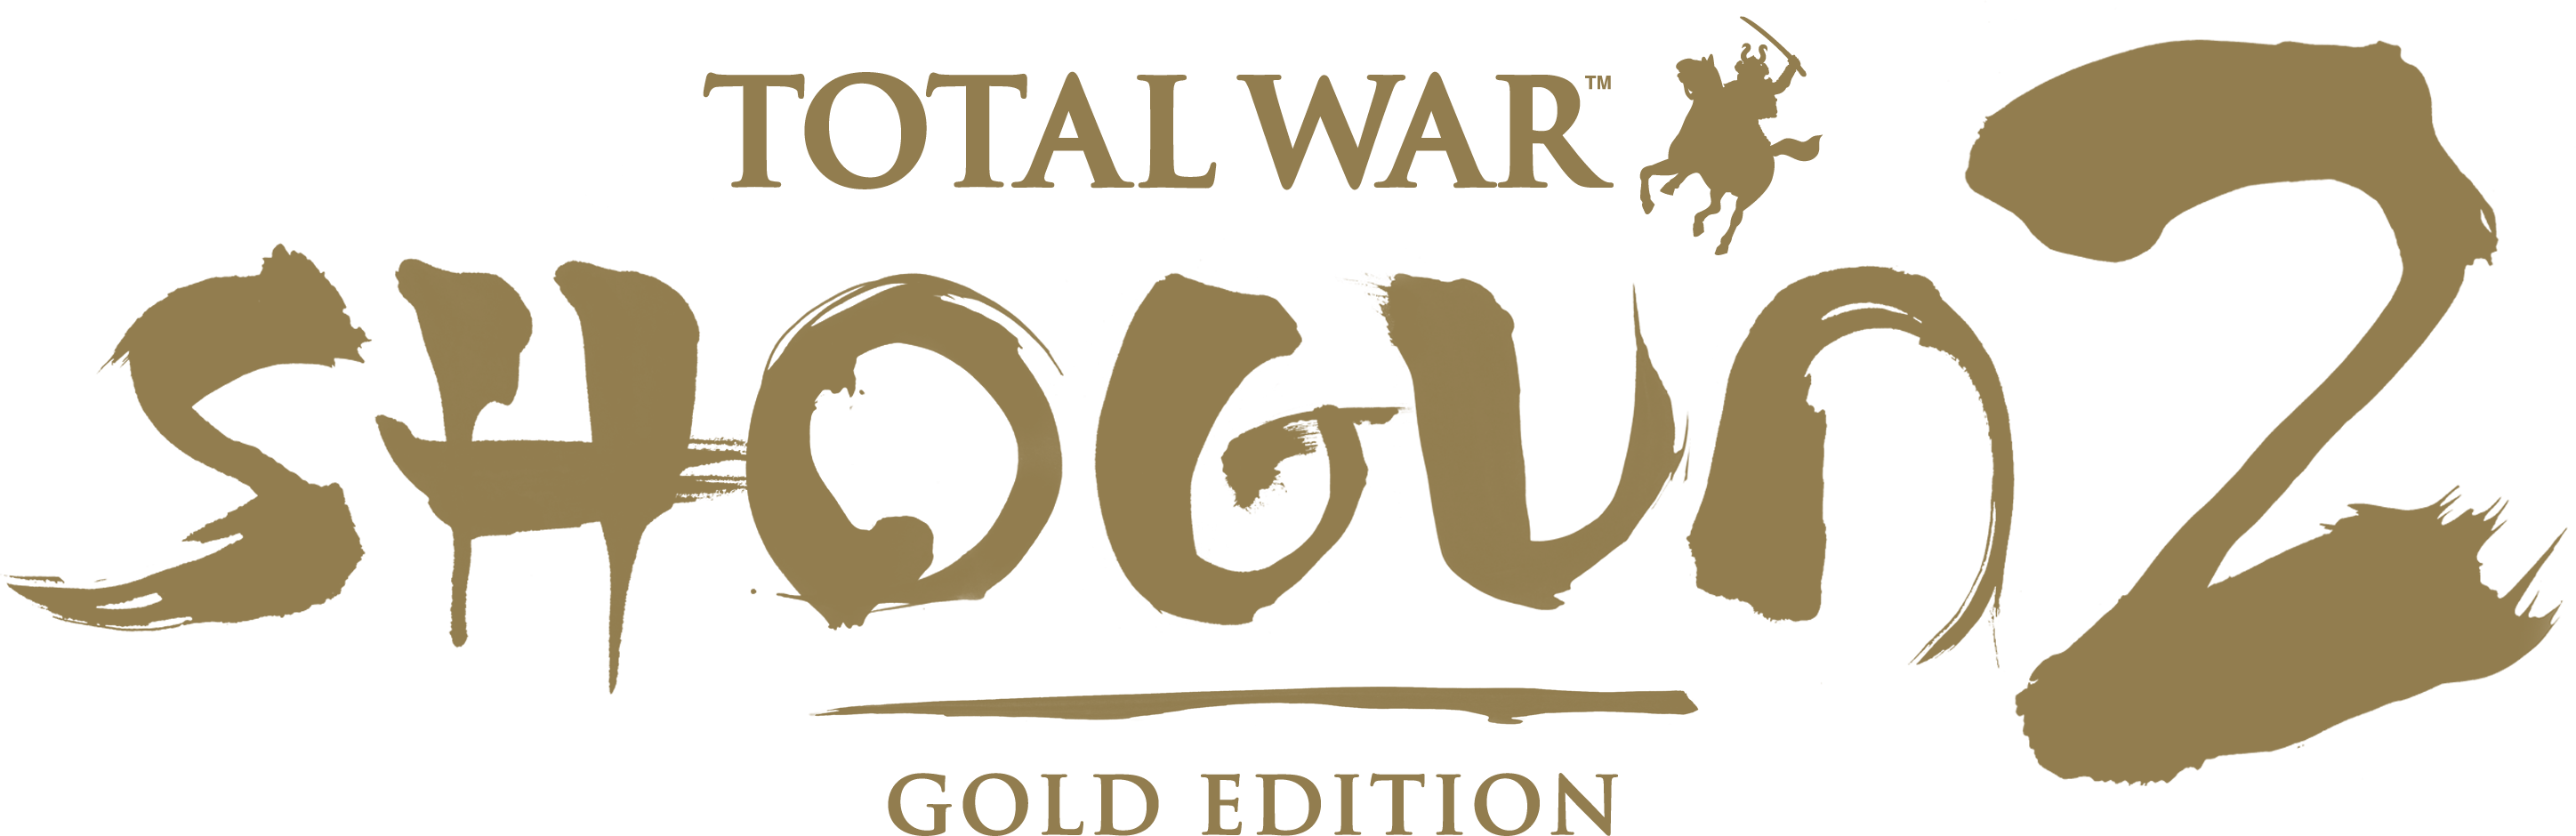 Total War Shogun 2 Gold Edition Torrent Kickass Movie